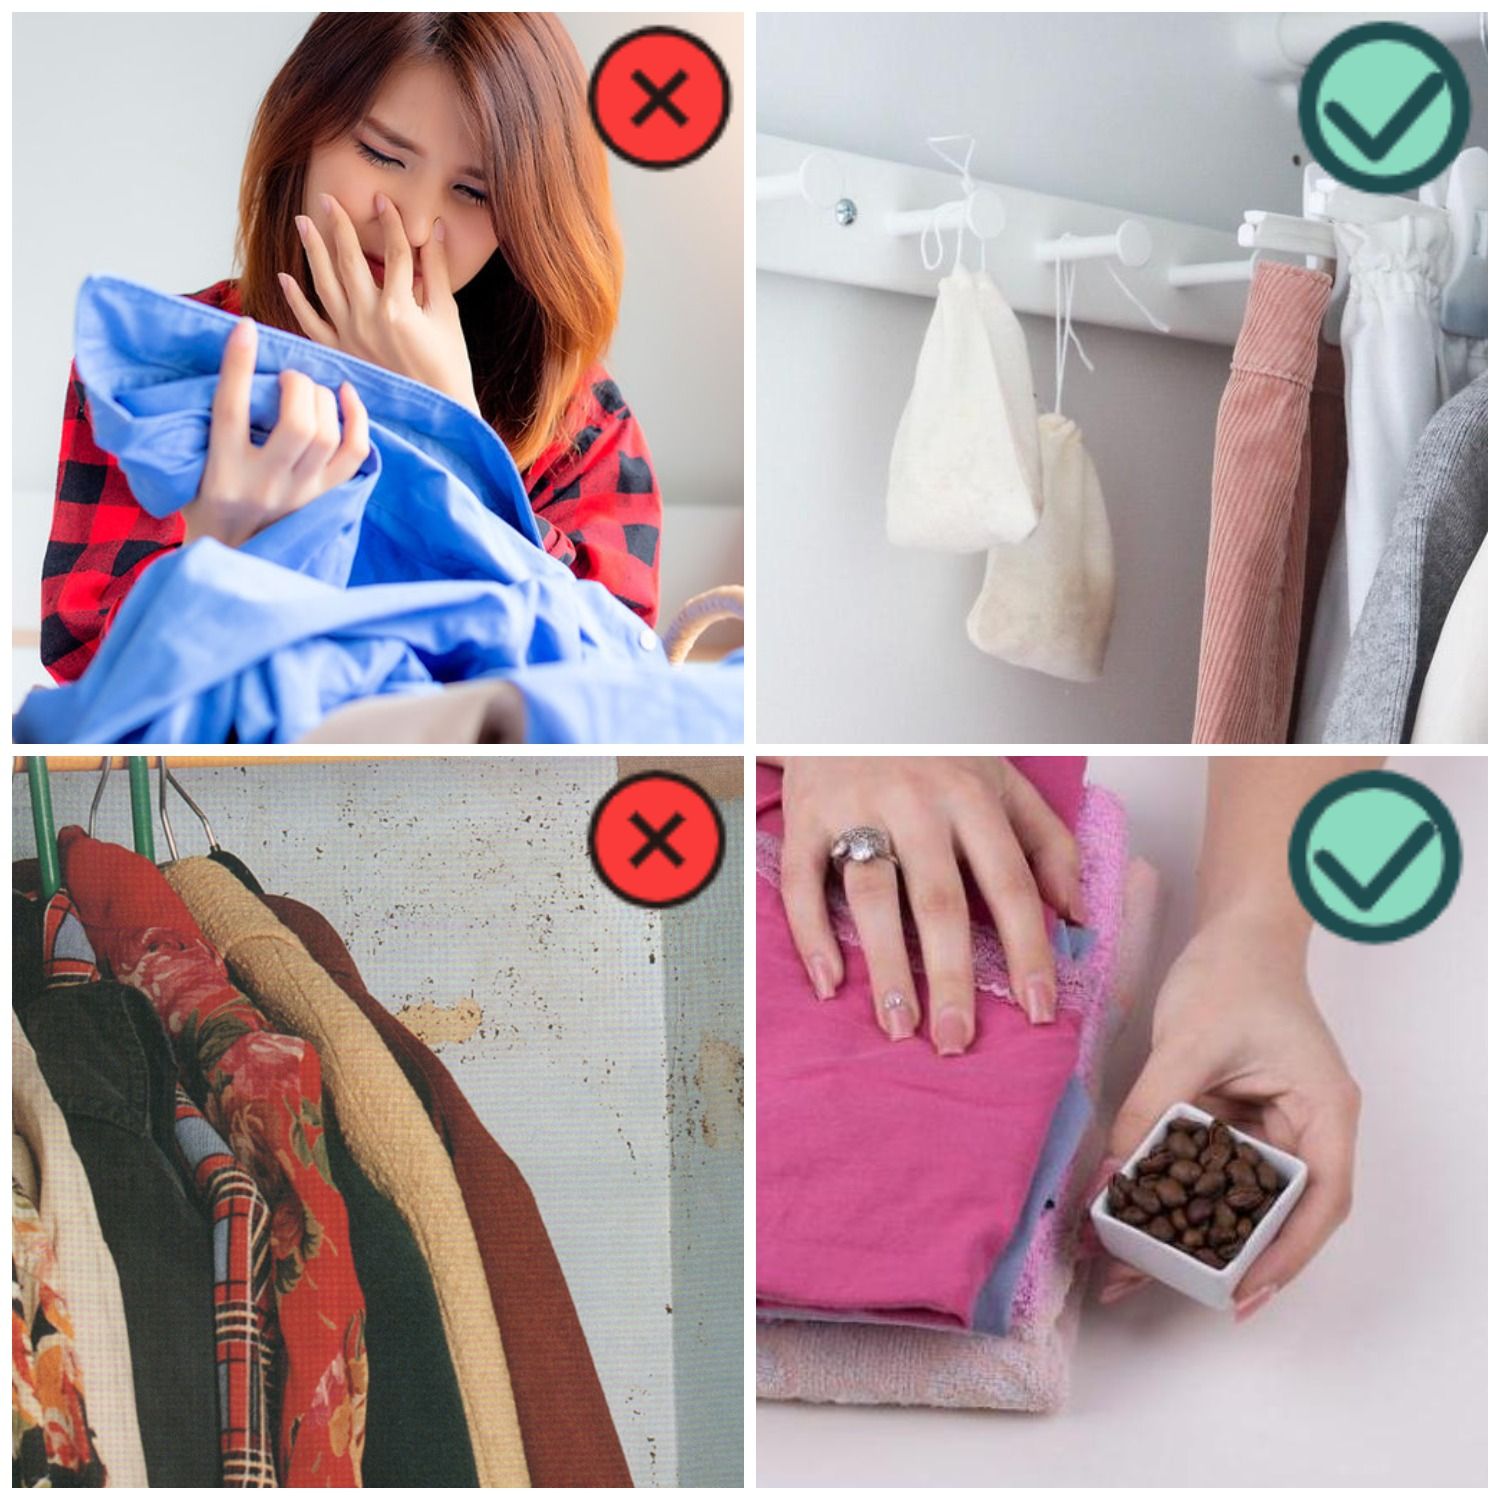 Как избавиться от запаха сырости на одежде: проверенные способы